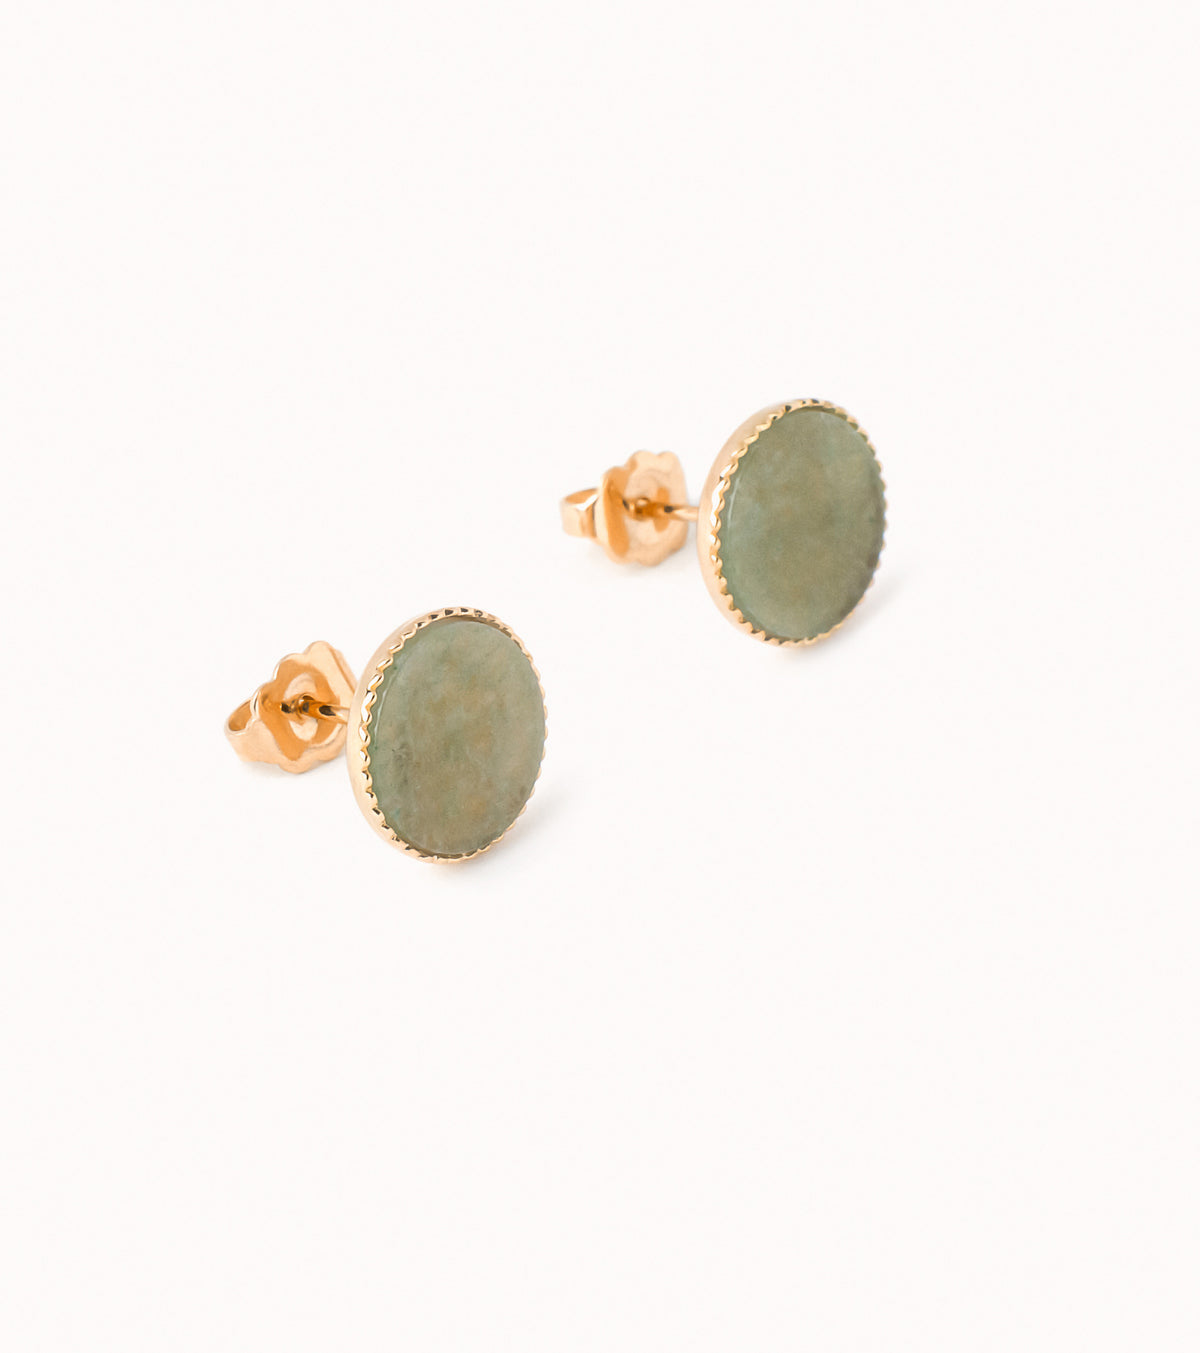 10mm Alessia earrings